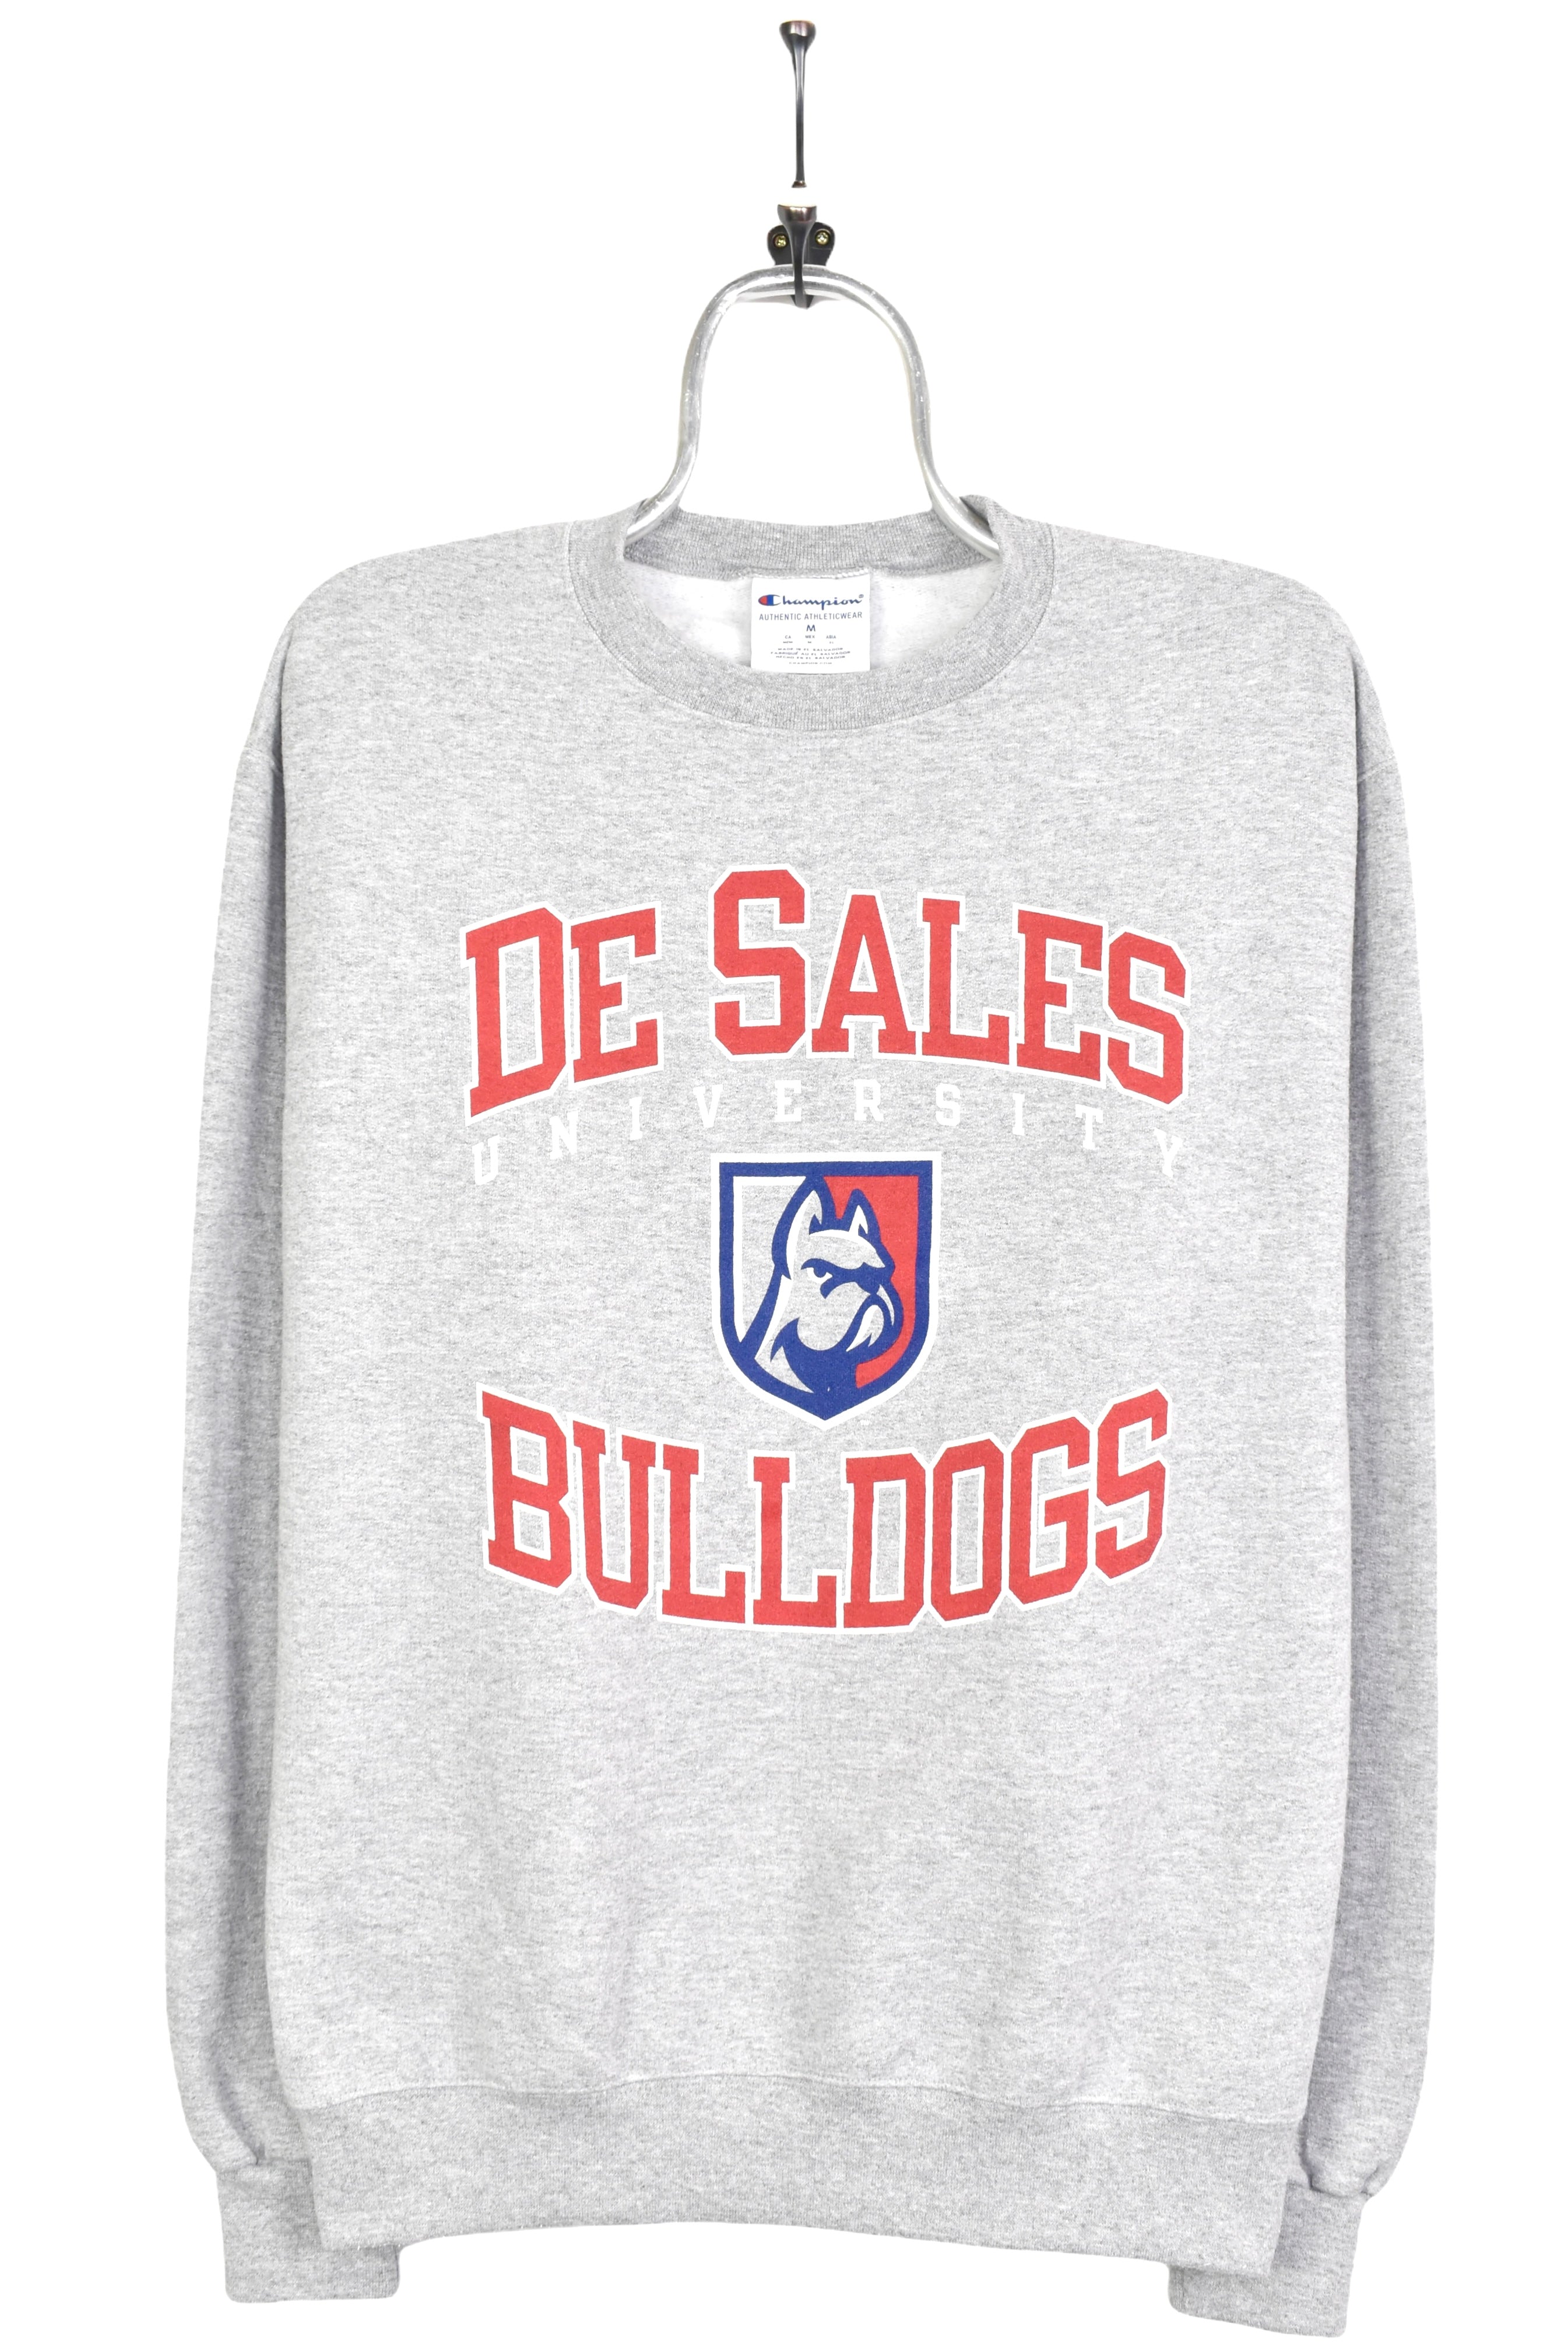 Vintage De Sales University Bulldogs grey sweatshirt | Medium COLLEGE